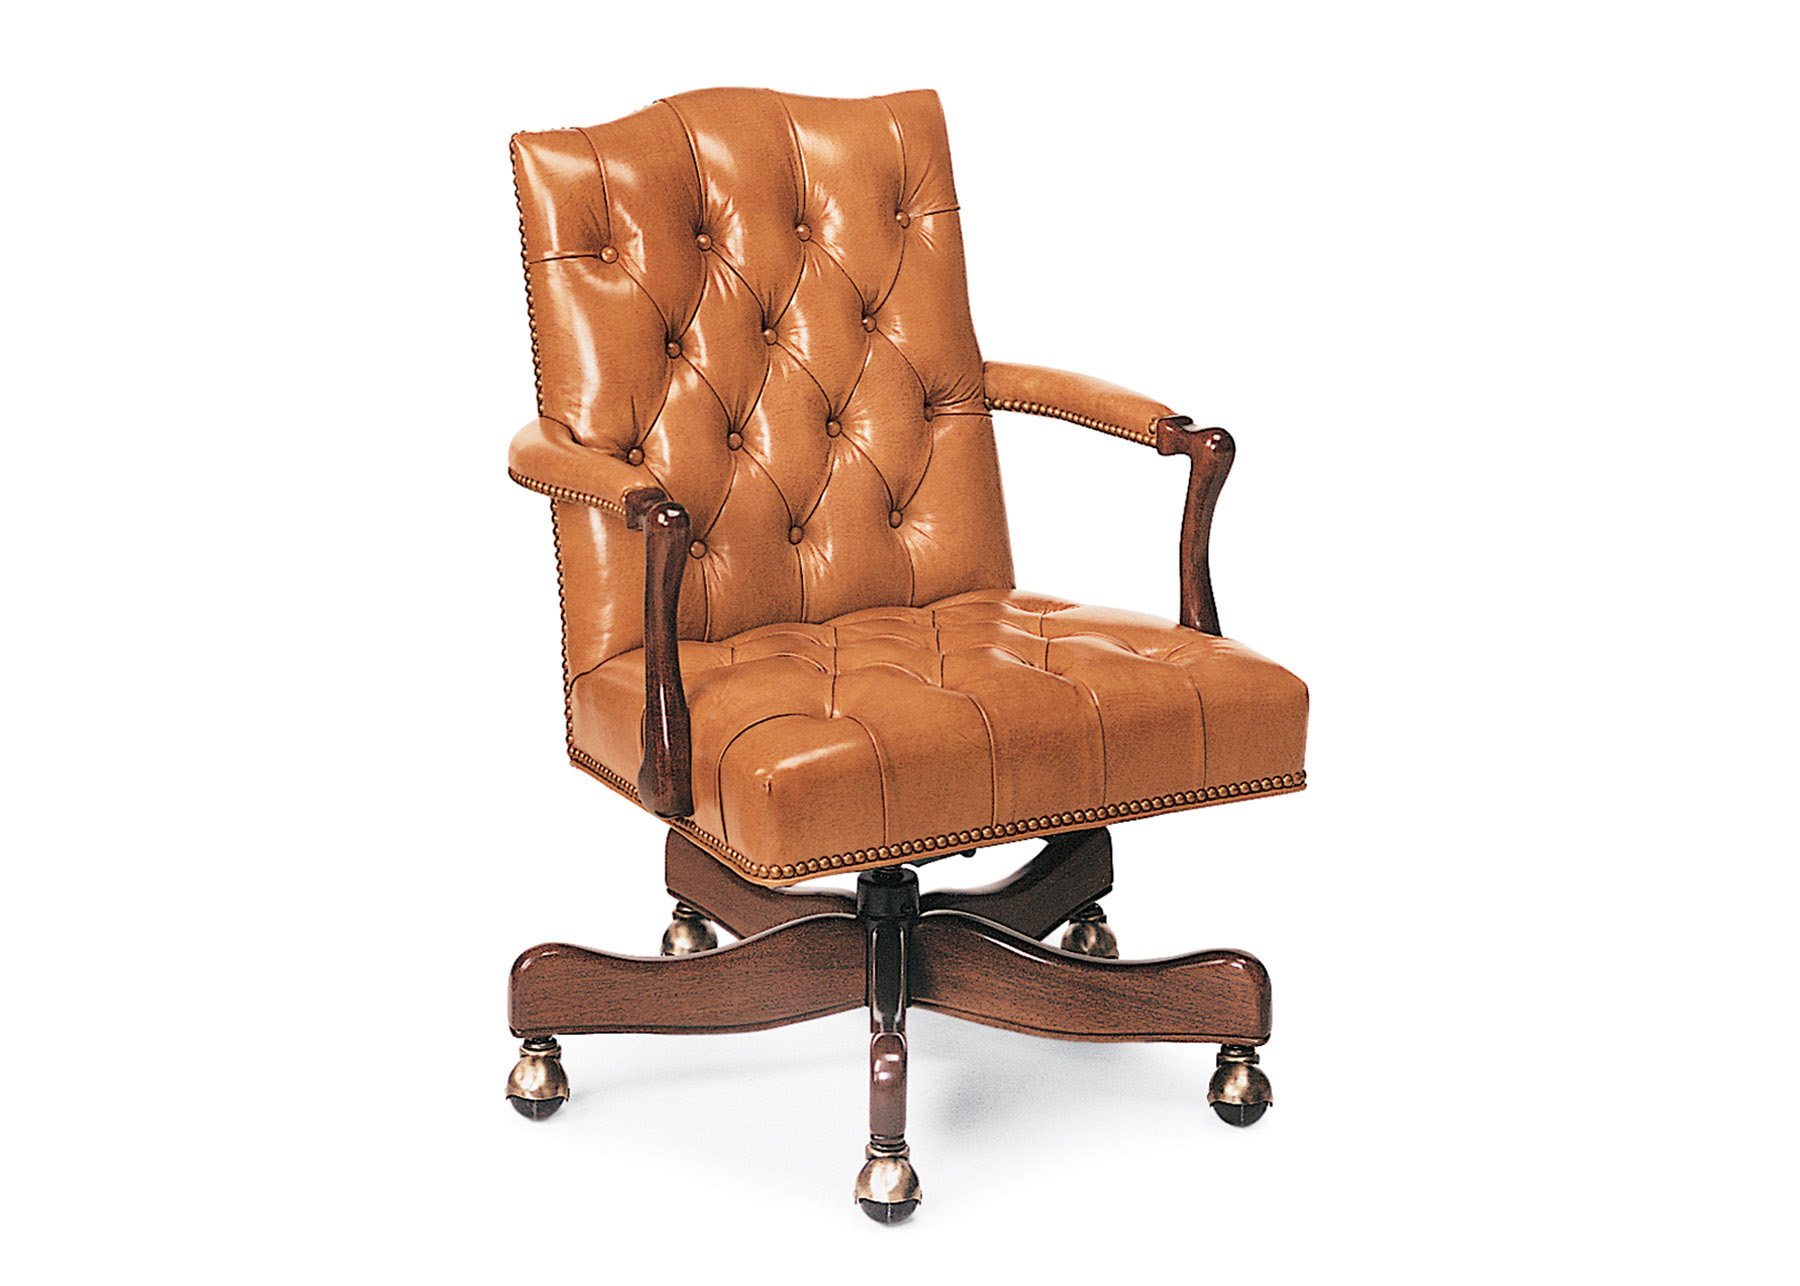 Cabot Wrenn Legends Graham Swivel Chair